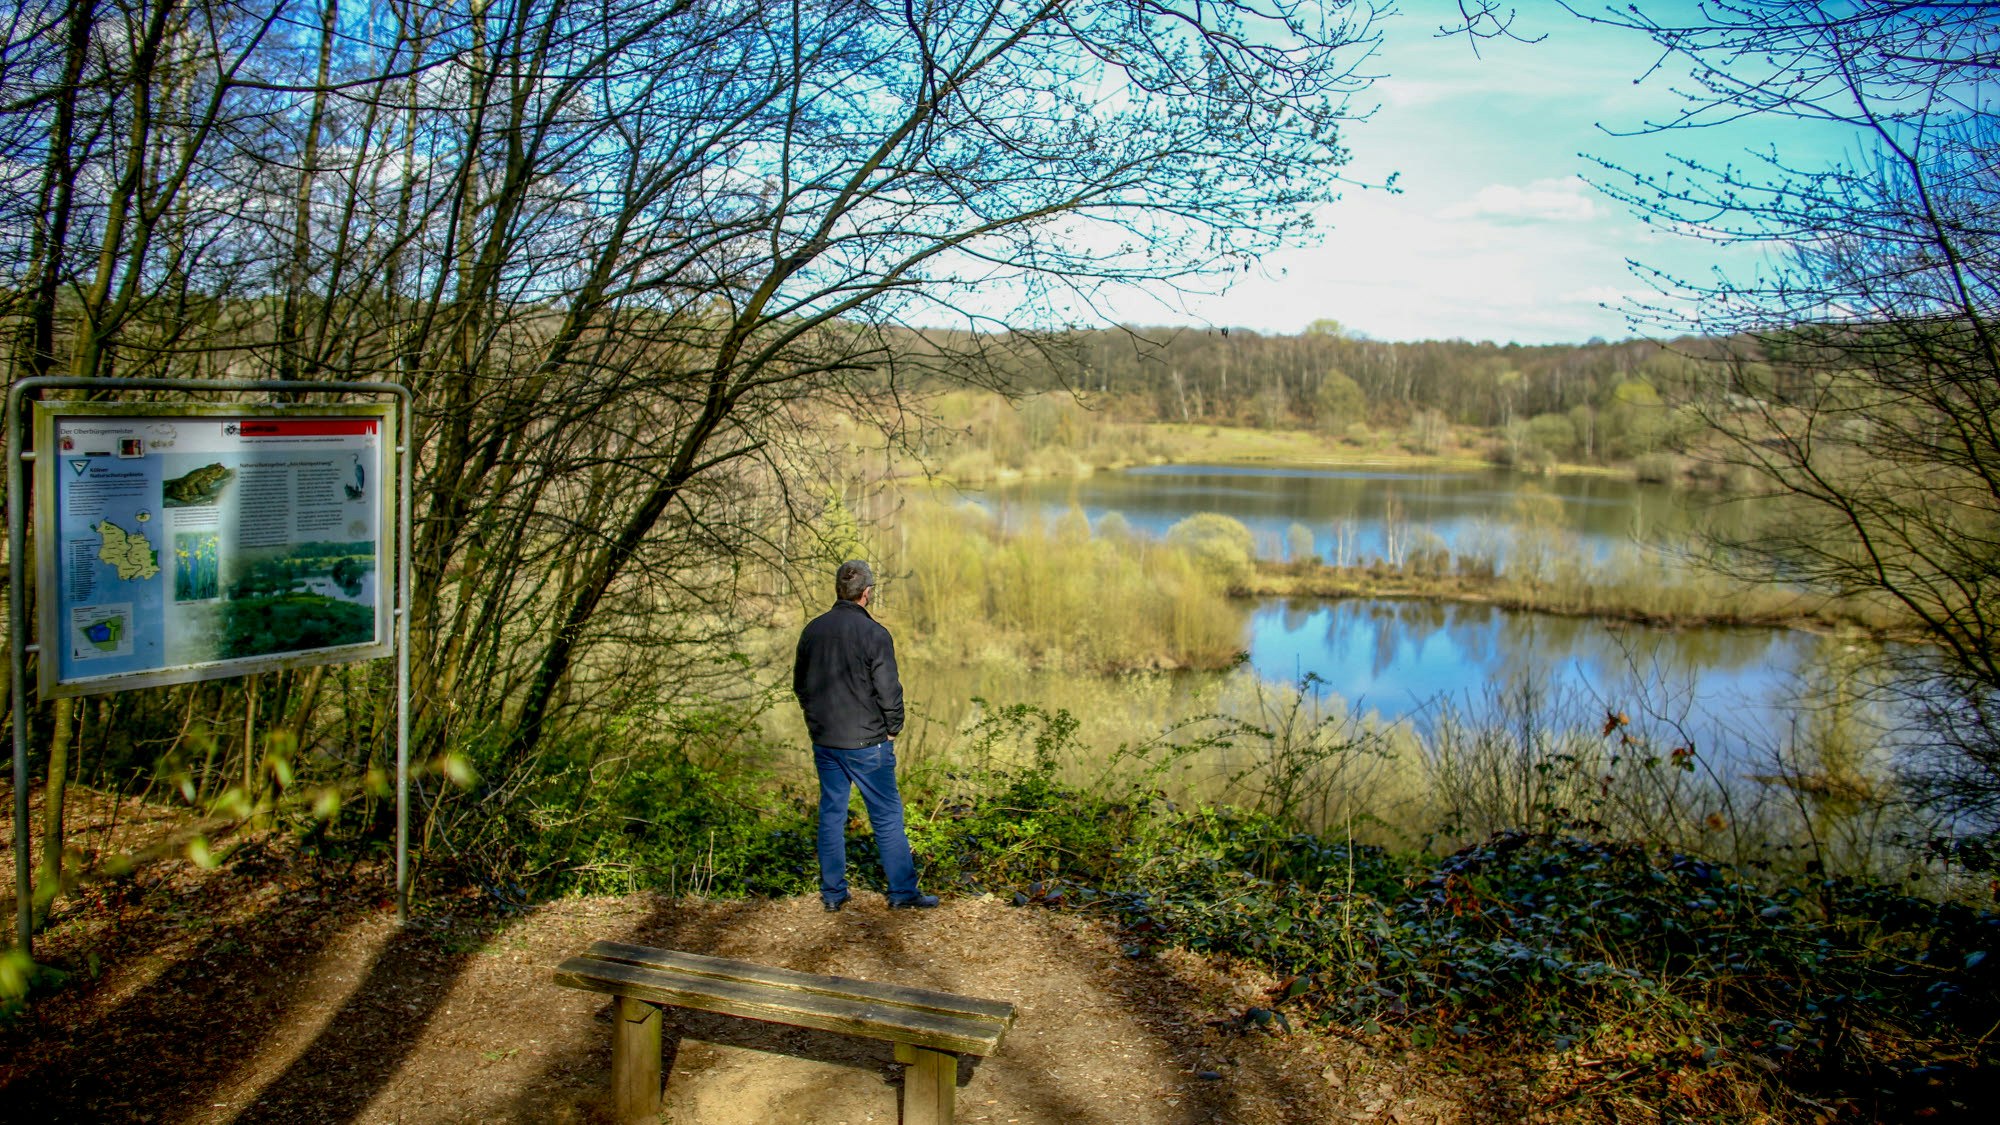 Mann steht an einem Rand eines Gewässers, hinter ihm eine Infotafel und eine Holzbank